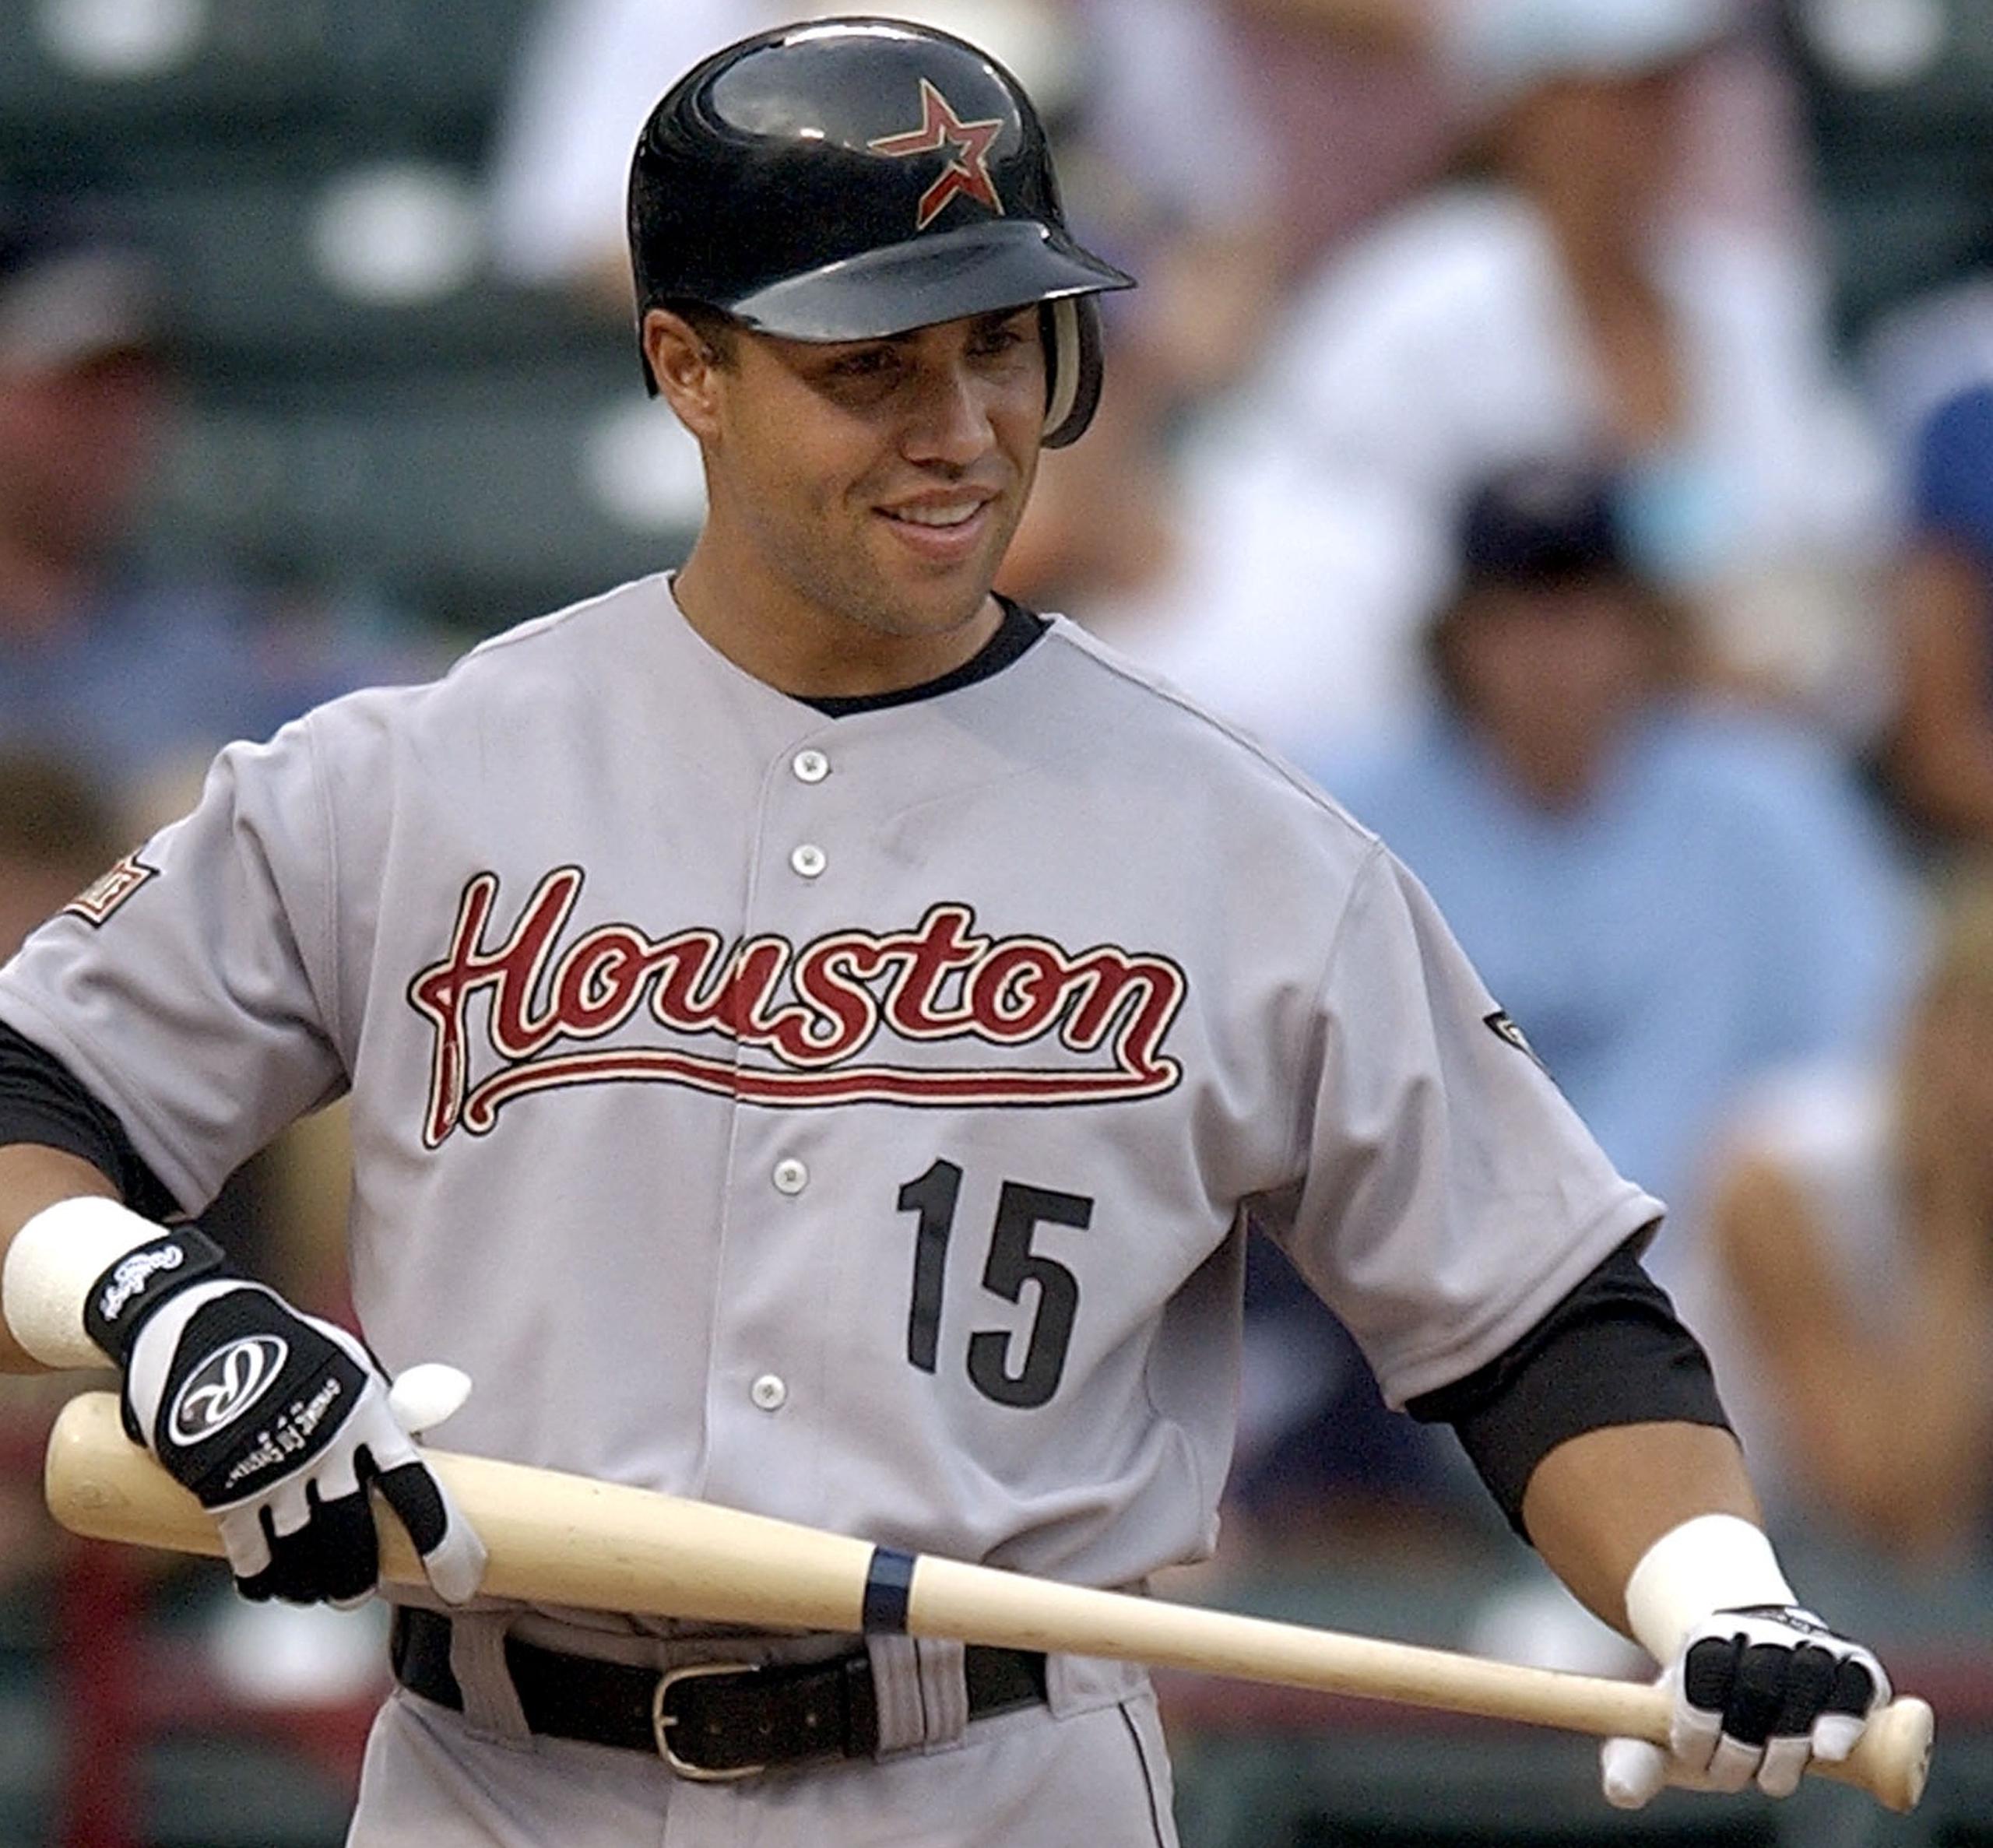 En el 2004, Carlos Beltrán tuvo una de las más impresionantes demostraciones en unos playoffs con los Astros de Houston.